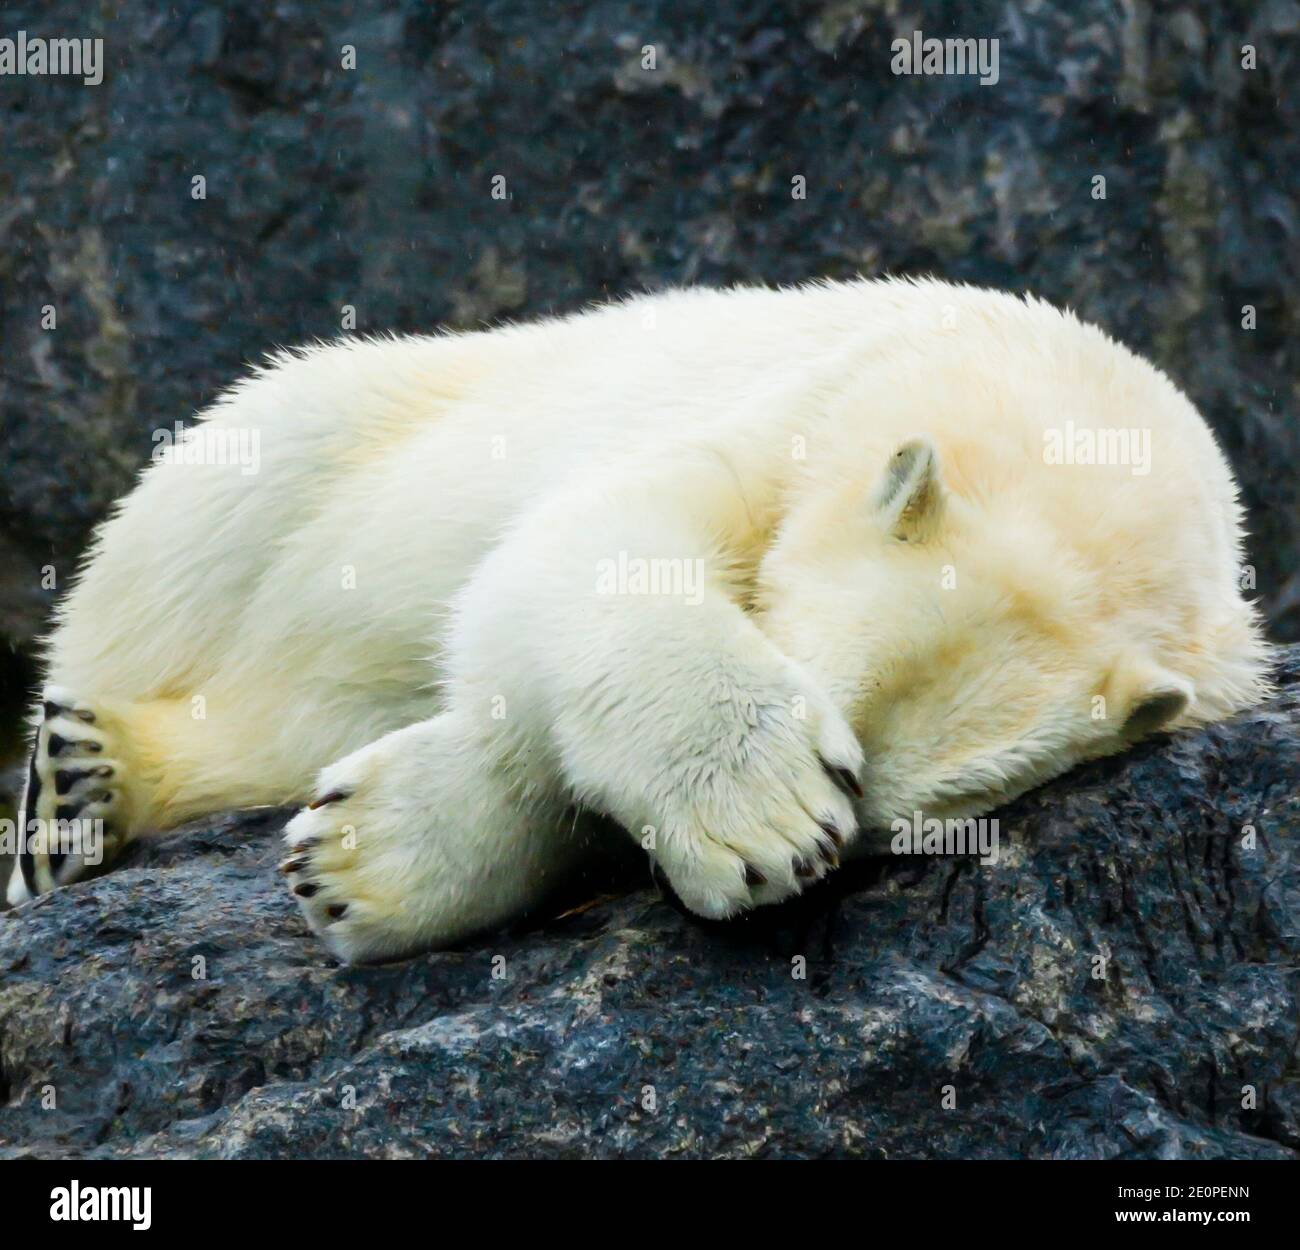 El oso blanco polar se vuelve tímido al ocultar su cara con una pata Foto de stock